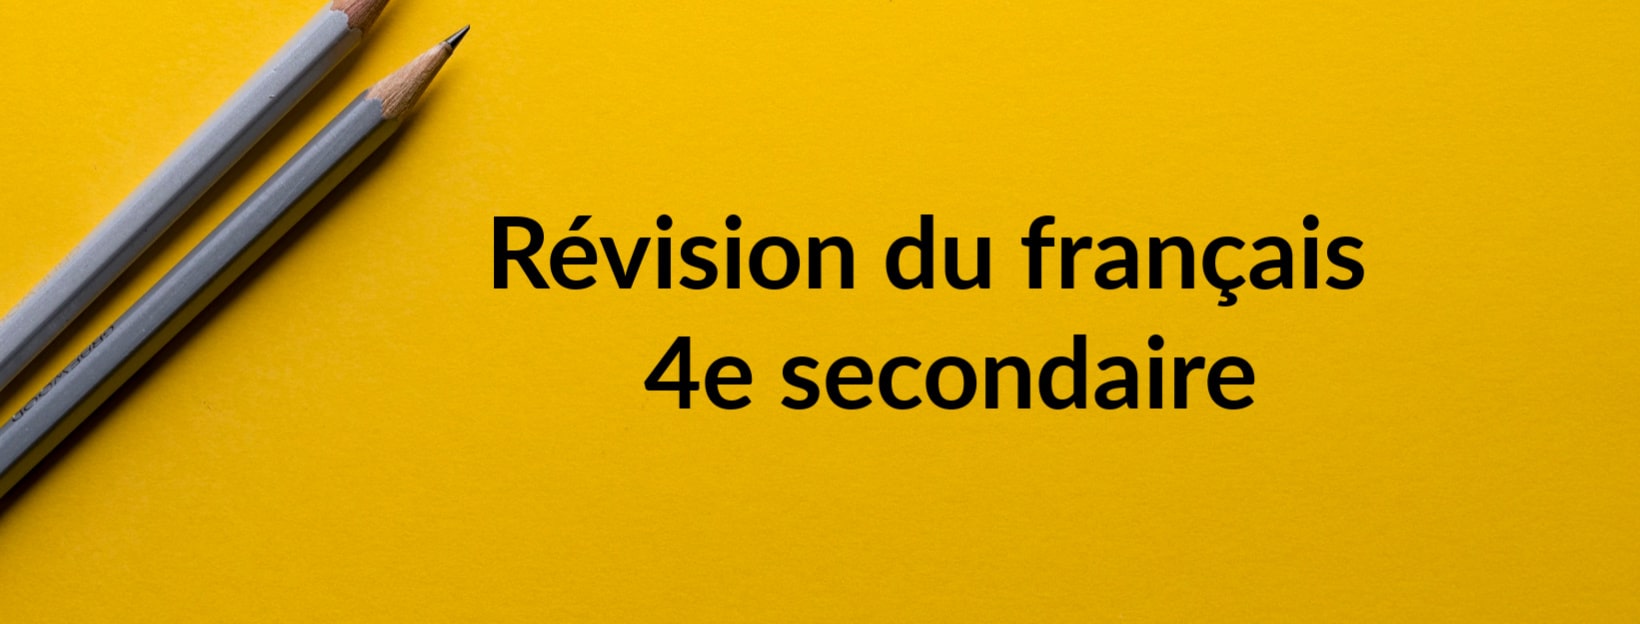 Révision du français 4e secondaire SOSprof tutorat scolaire